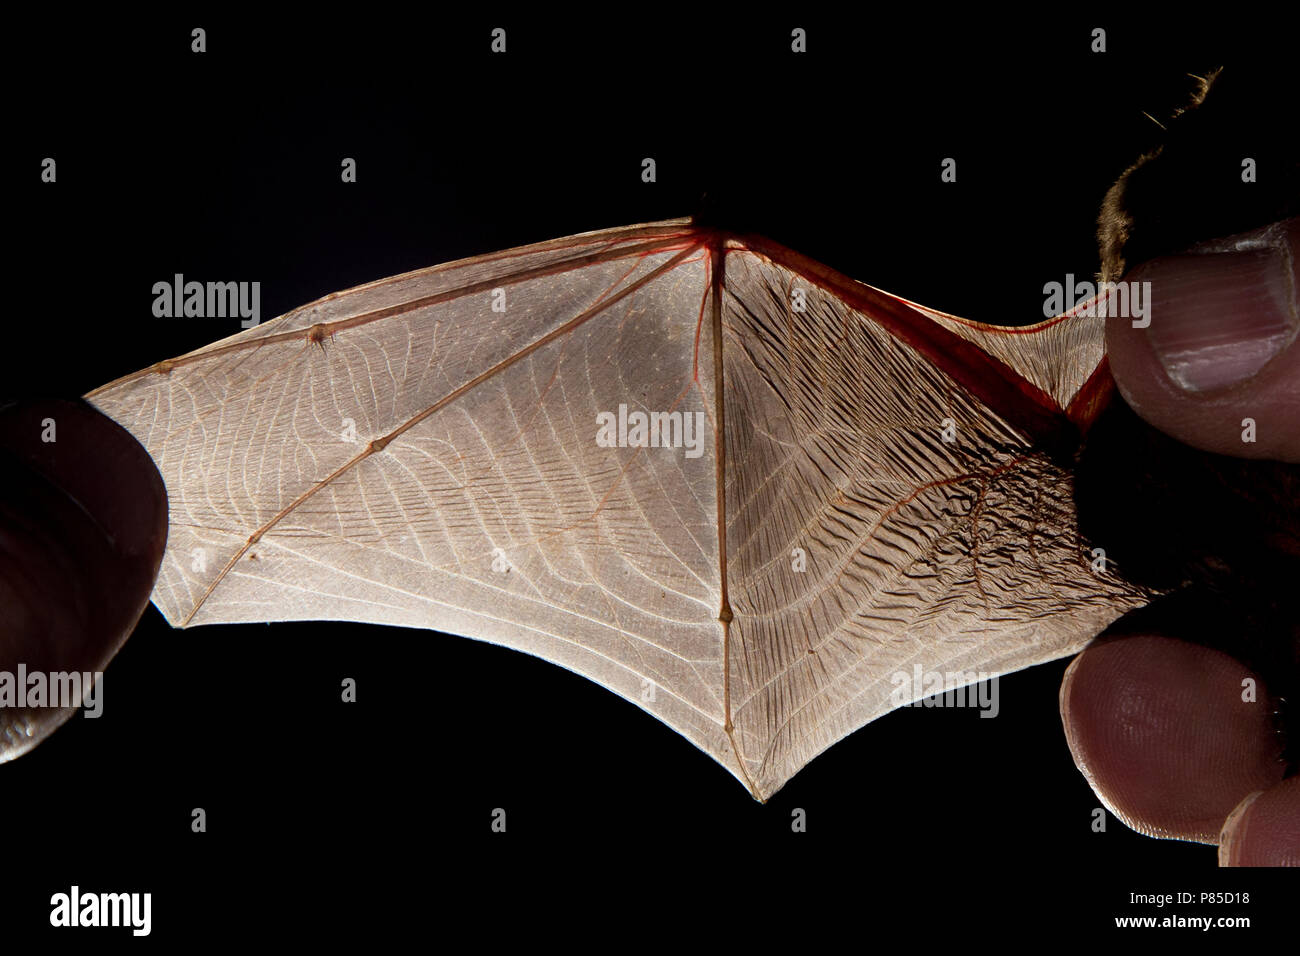 Bovenzijde vleugel van de Ruige Dwergvleermuis, Wing of Nathusius' pipistrelle from above Stock Photo